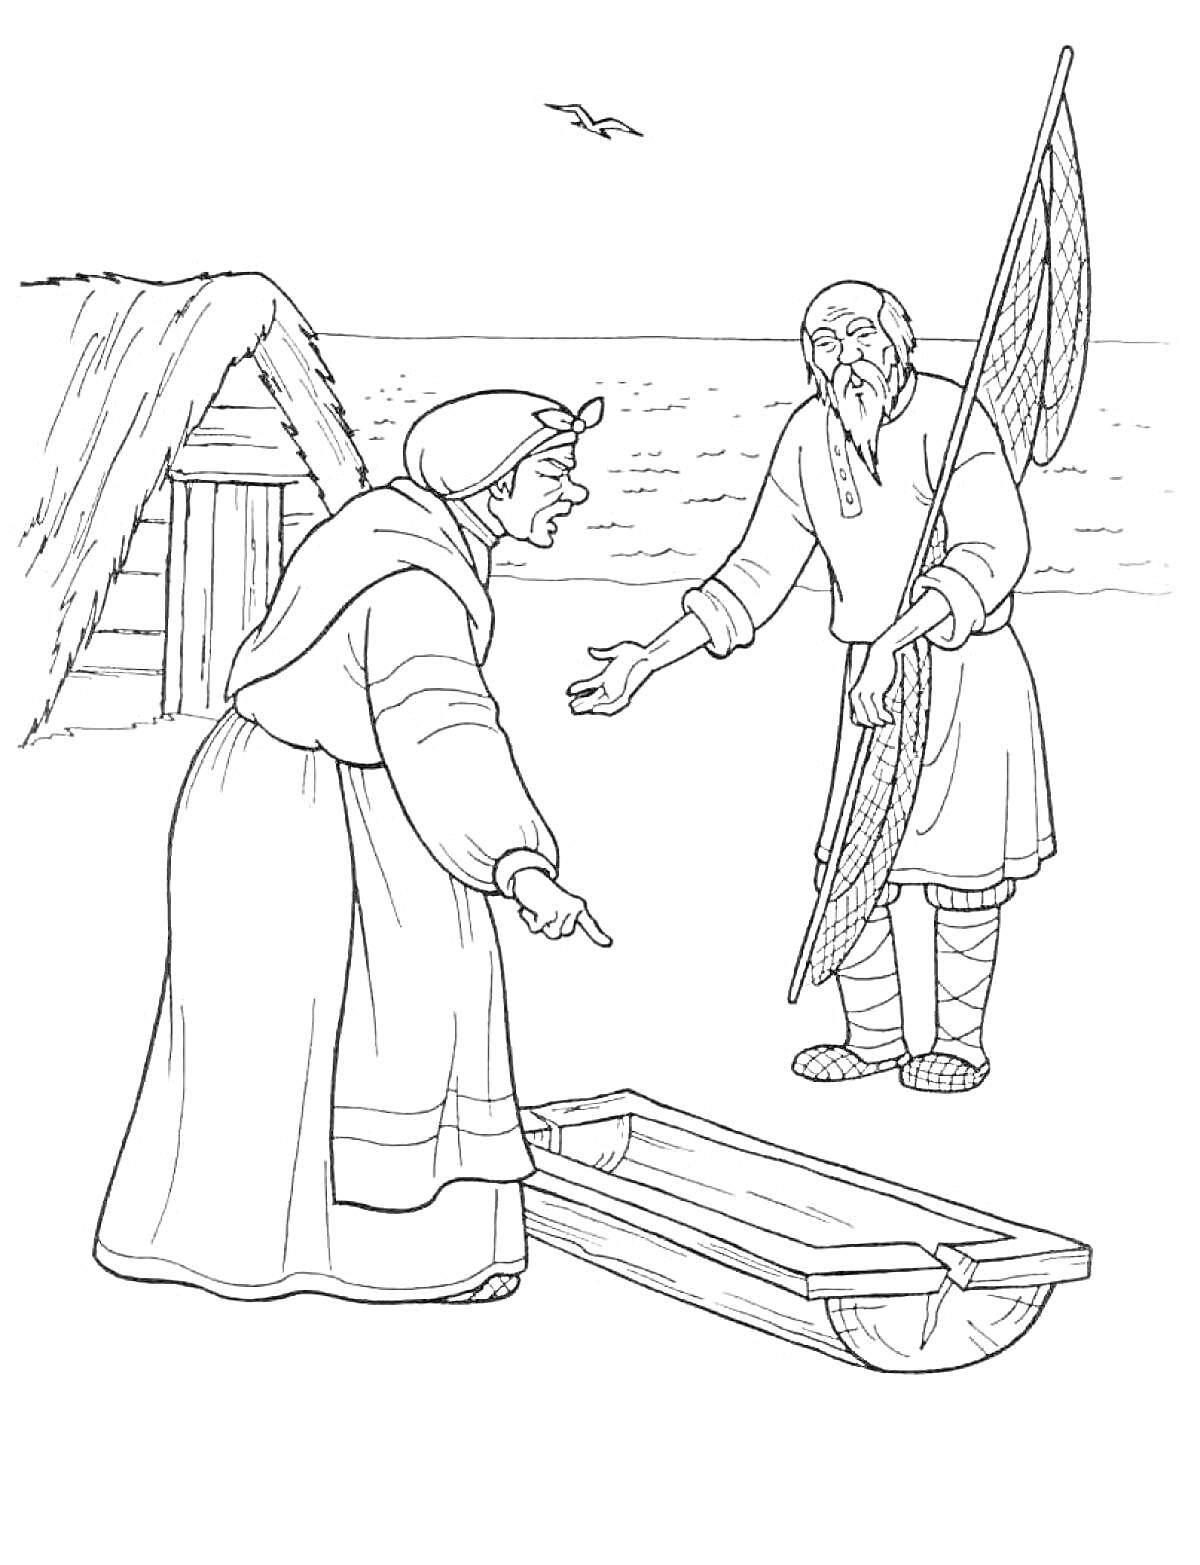 Раскраска Старик и старуха у корыта перед избой на берегу моря